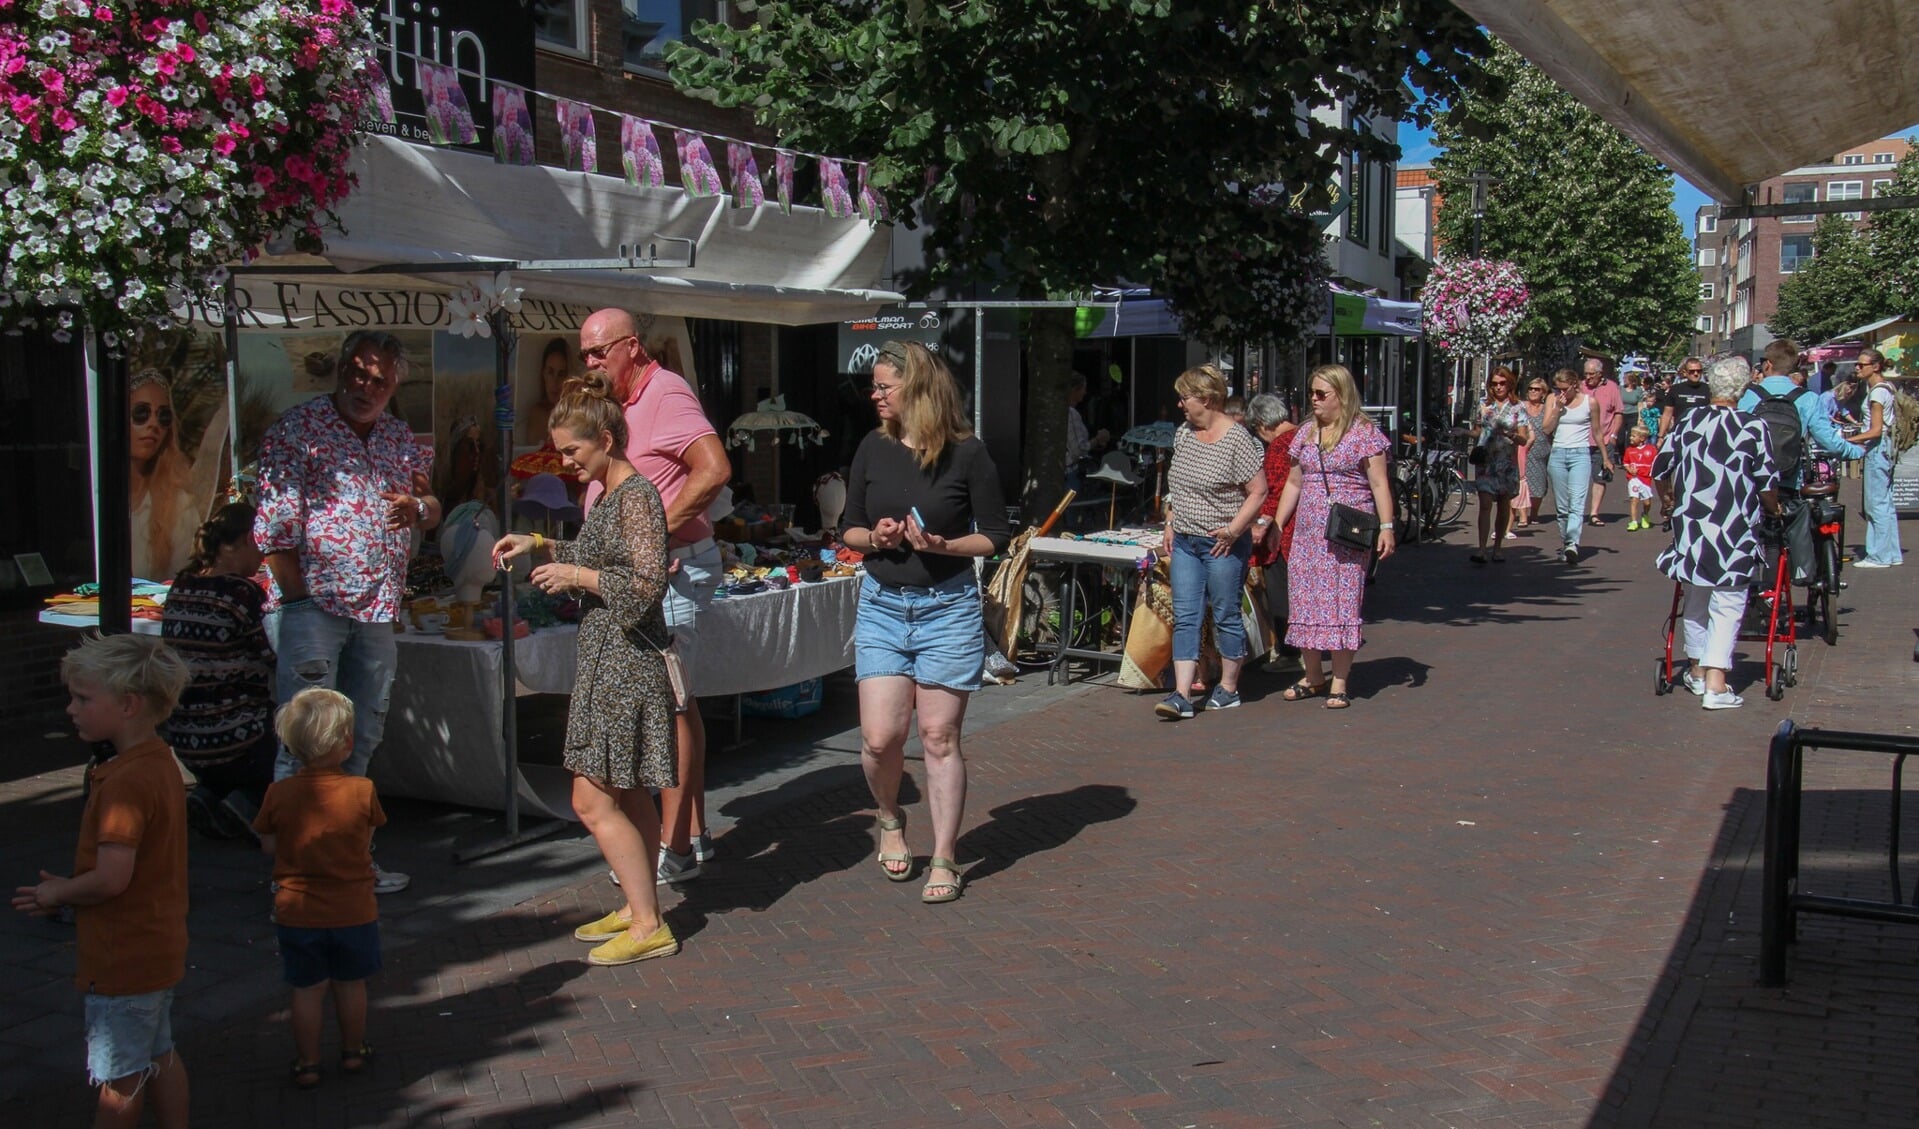 Op zaterdag 5 augustus is er in de Kanaalstraat een gezellige midzomermarkt.